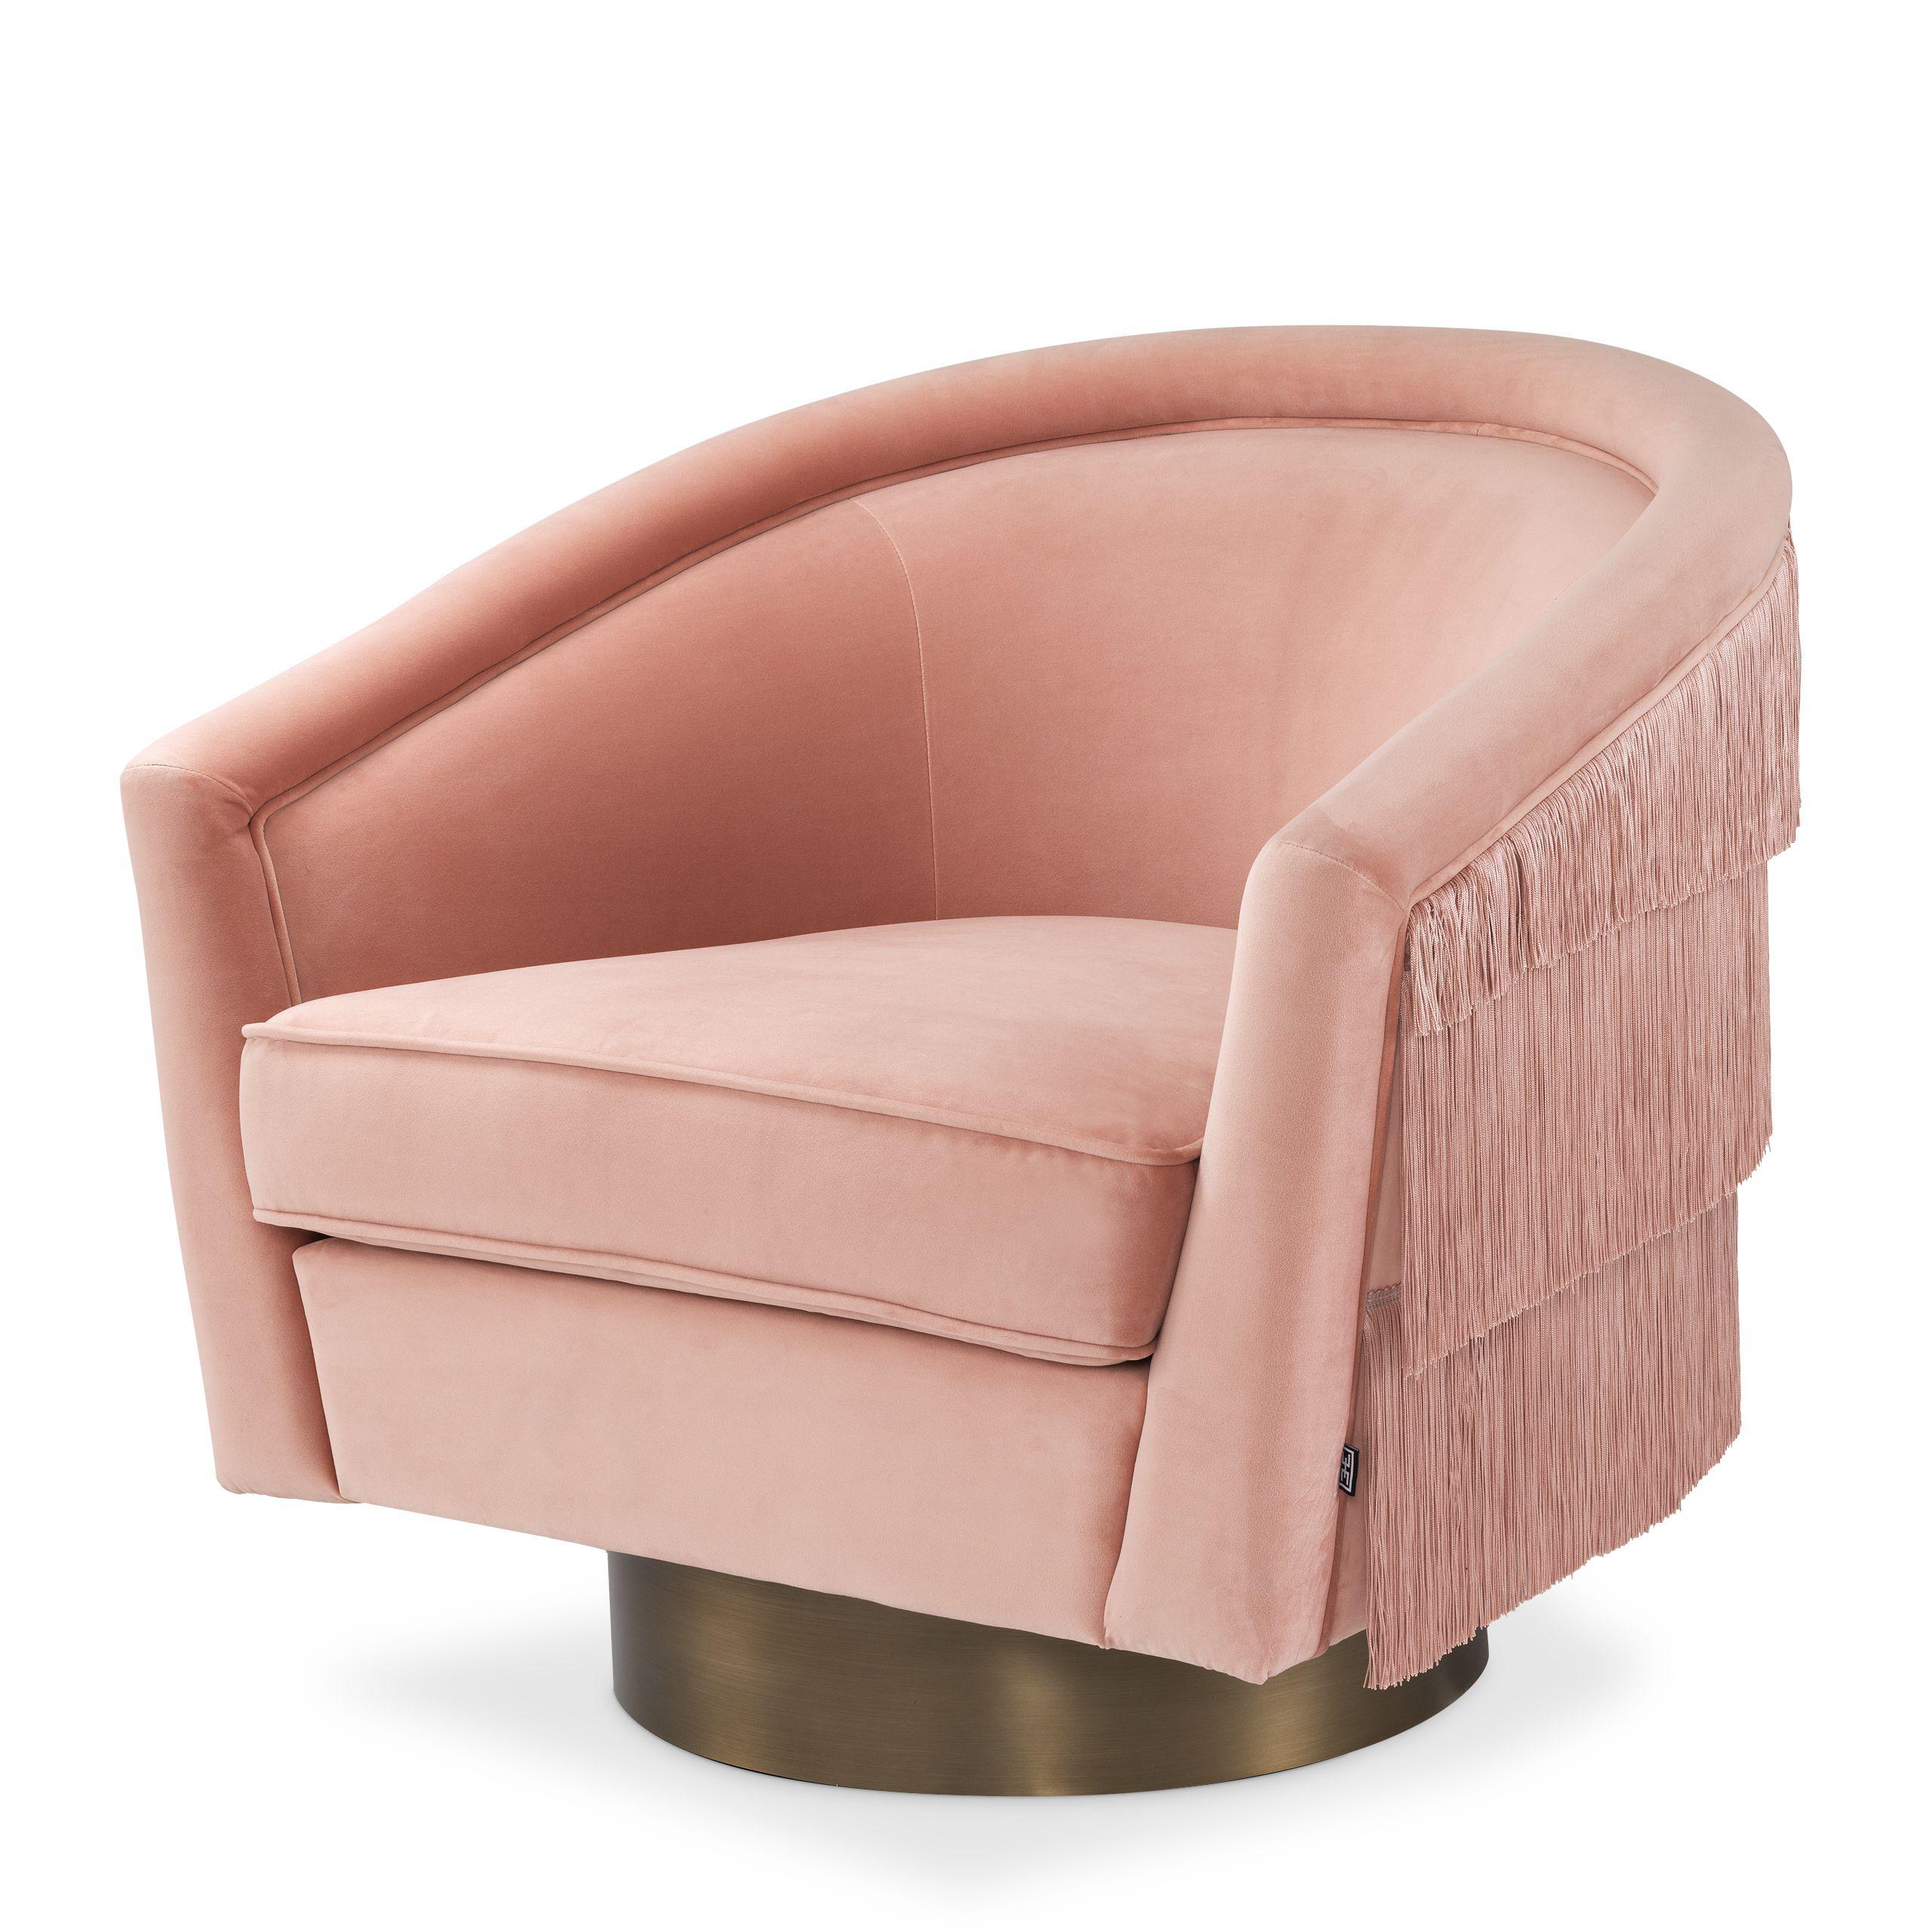 Купить Крутящееся кресло Swivel Chair Le Vante в интернет-магазине roooms.ru